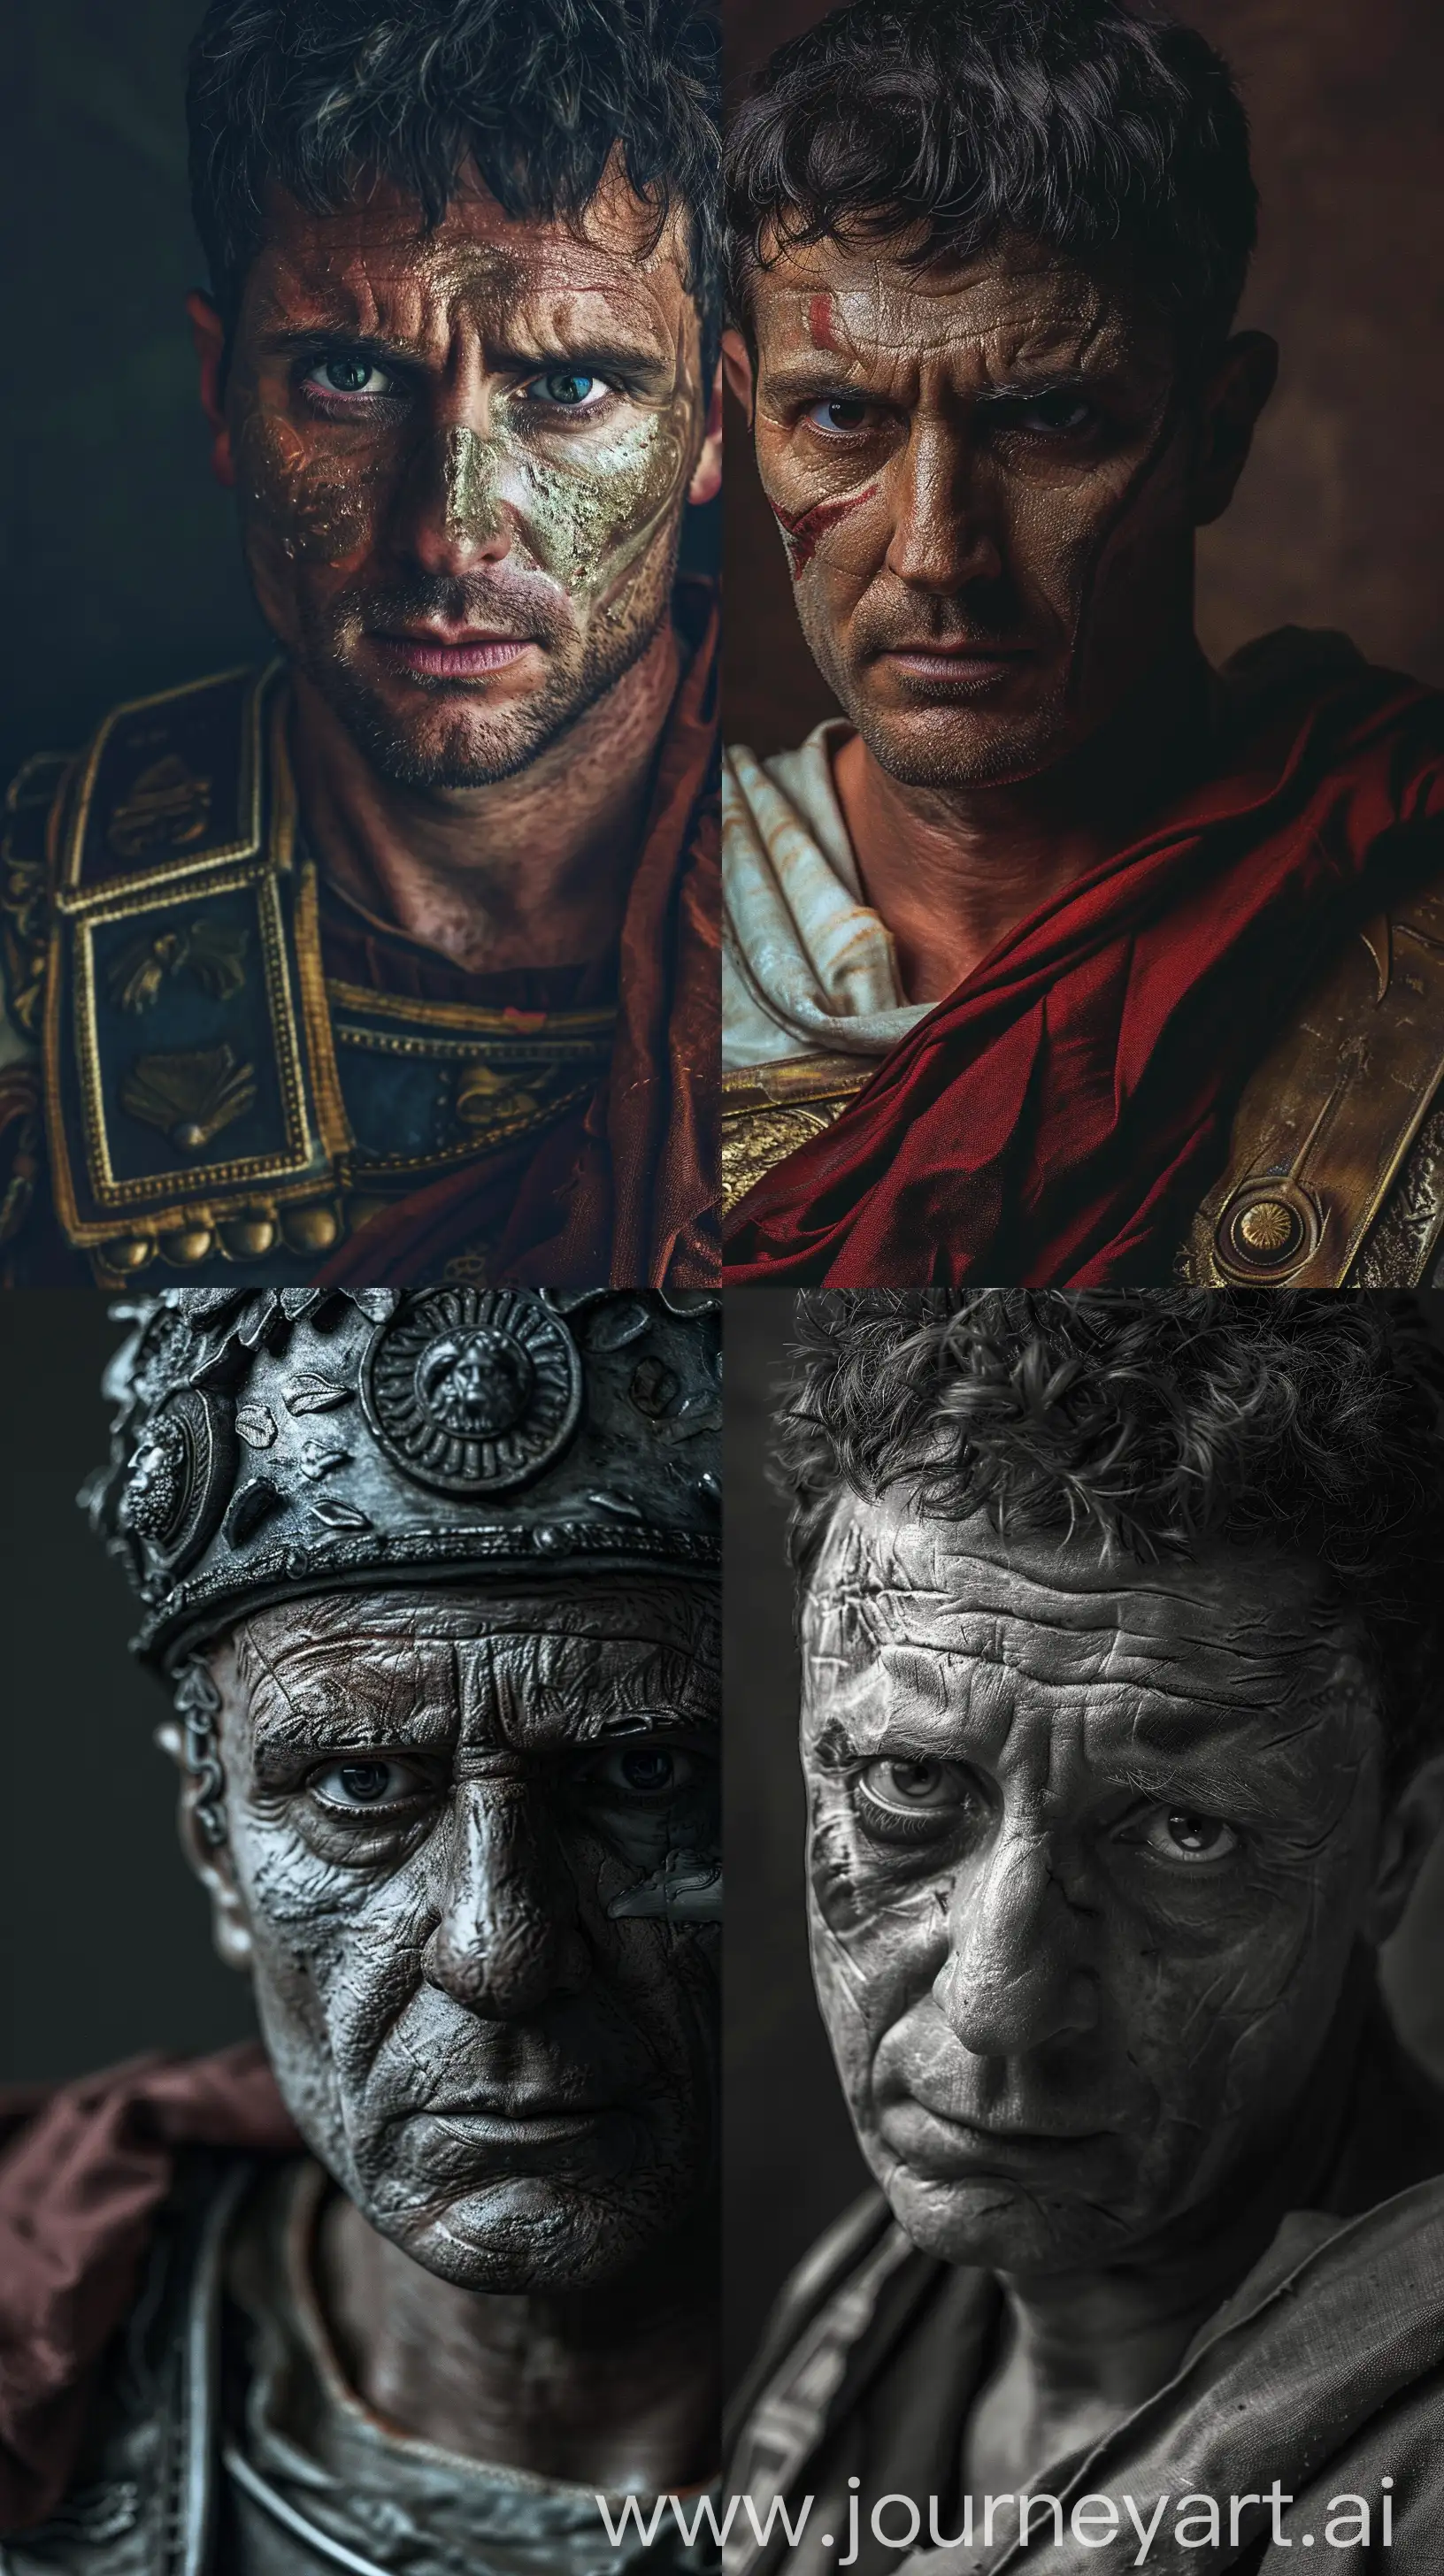 Gaius-Julius-Caesar-Portrait-in-Augustus-Attire-with-Cinematic-Lighting